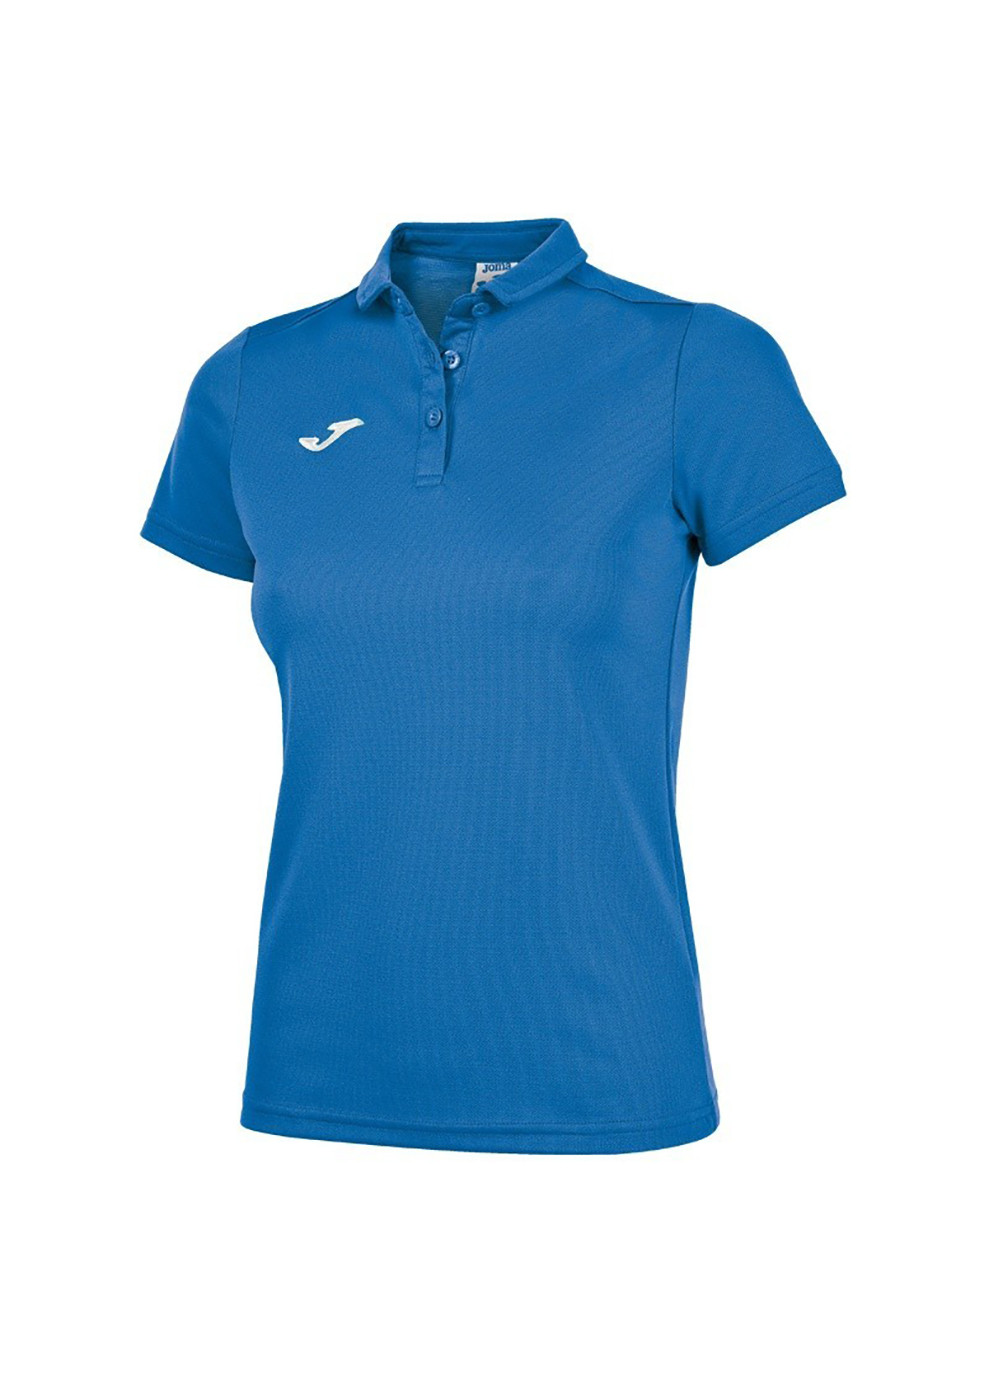 Синяя женская футболка-поло hobby women poo shirt royal s/s синий Joma с логотипом